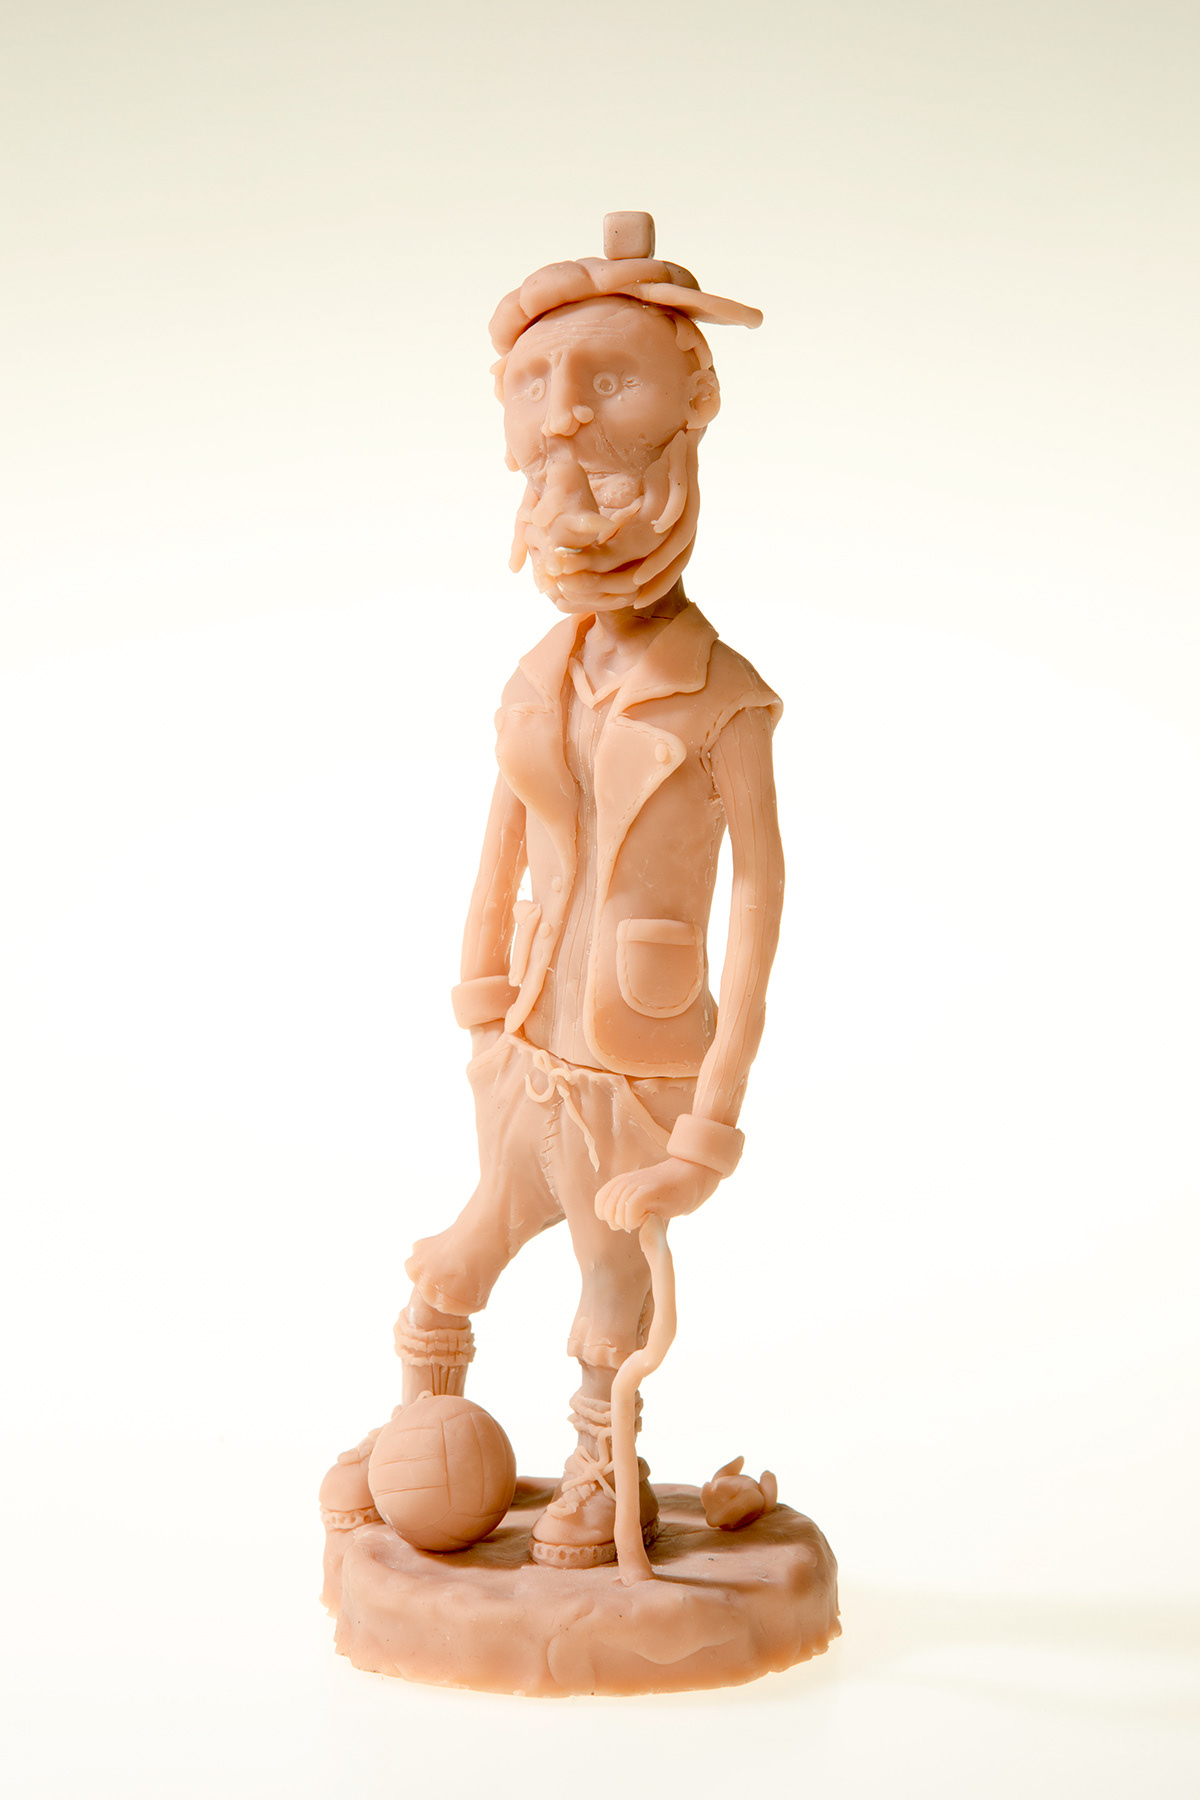 sculpey sculpture football player Character weird sparrow bird